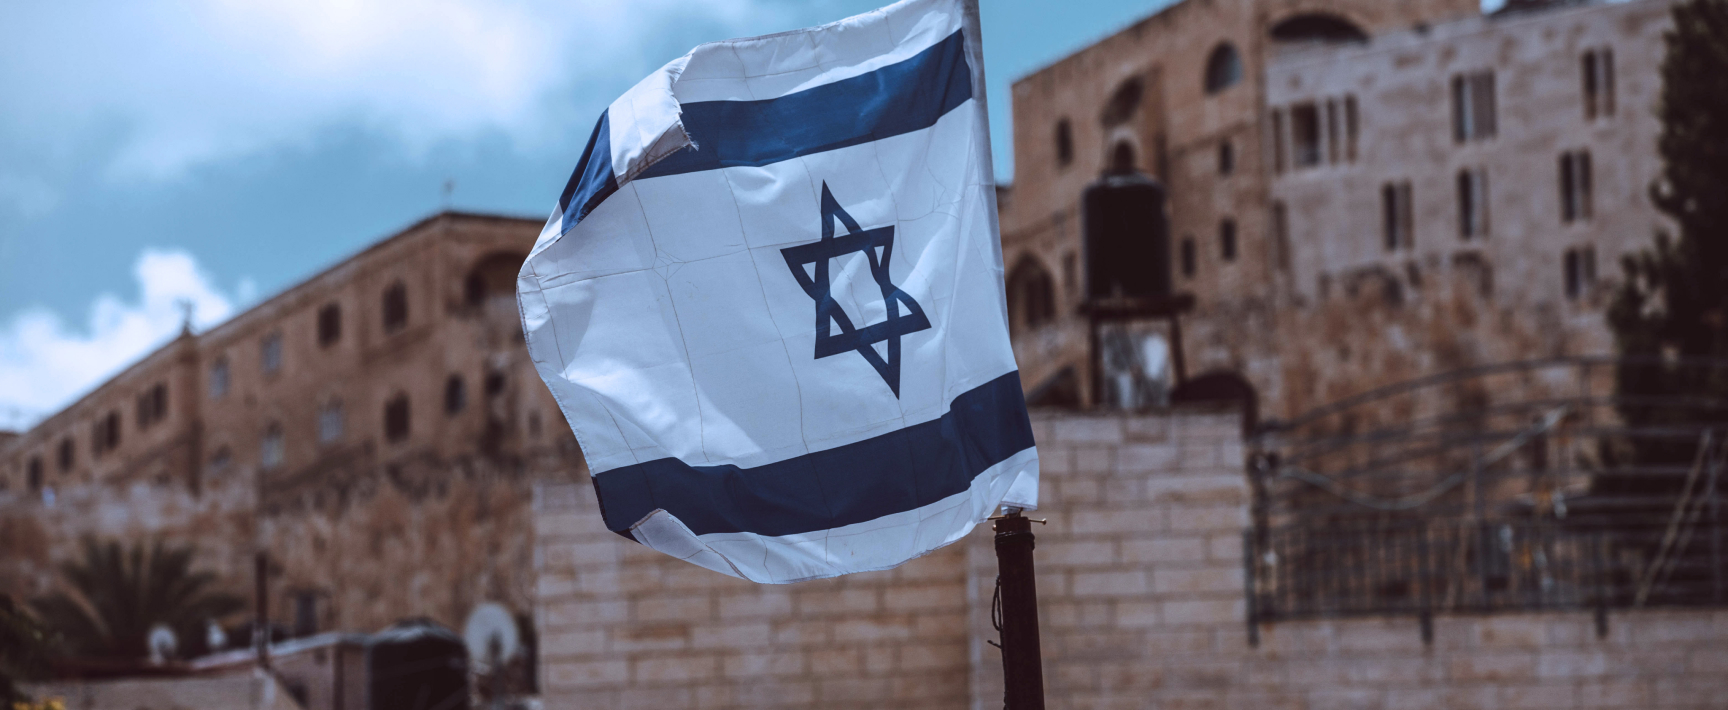 ברית יהודית דמוקרטית – שני הצדדים של אותו המטבע